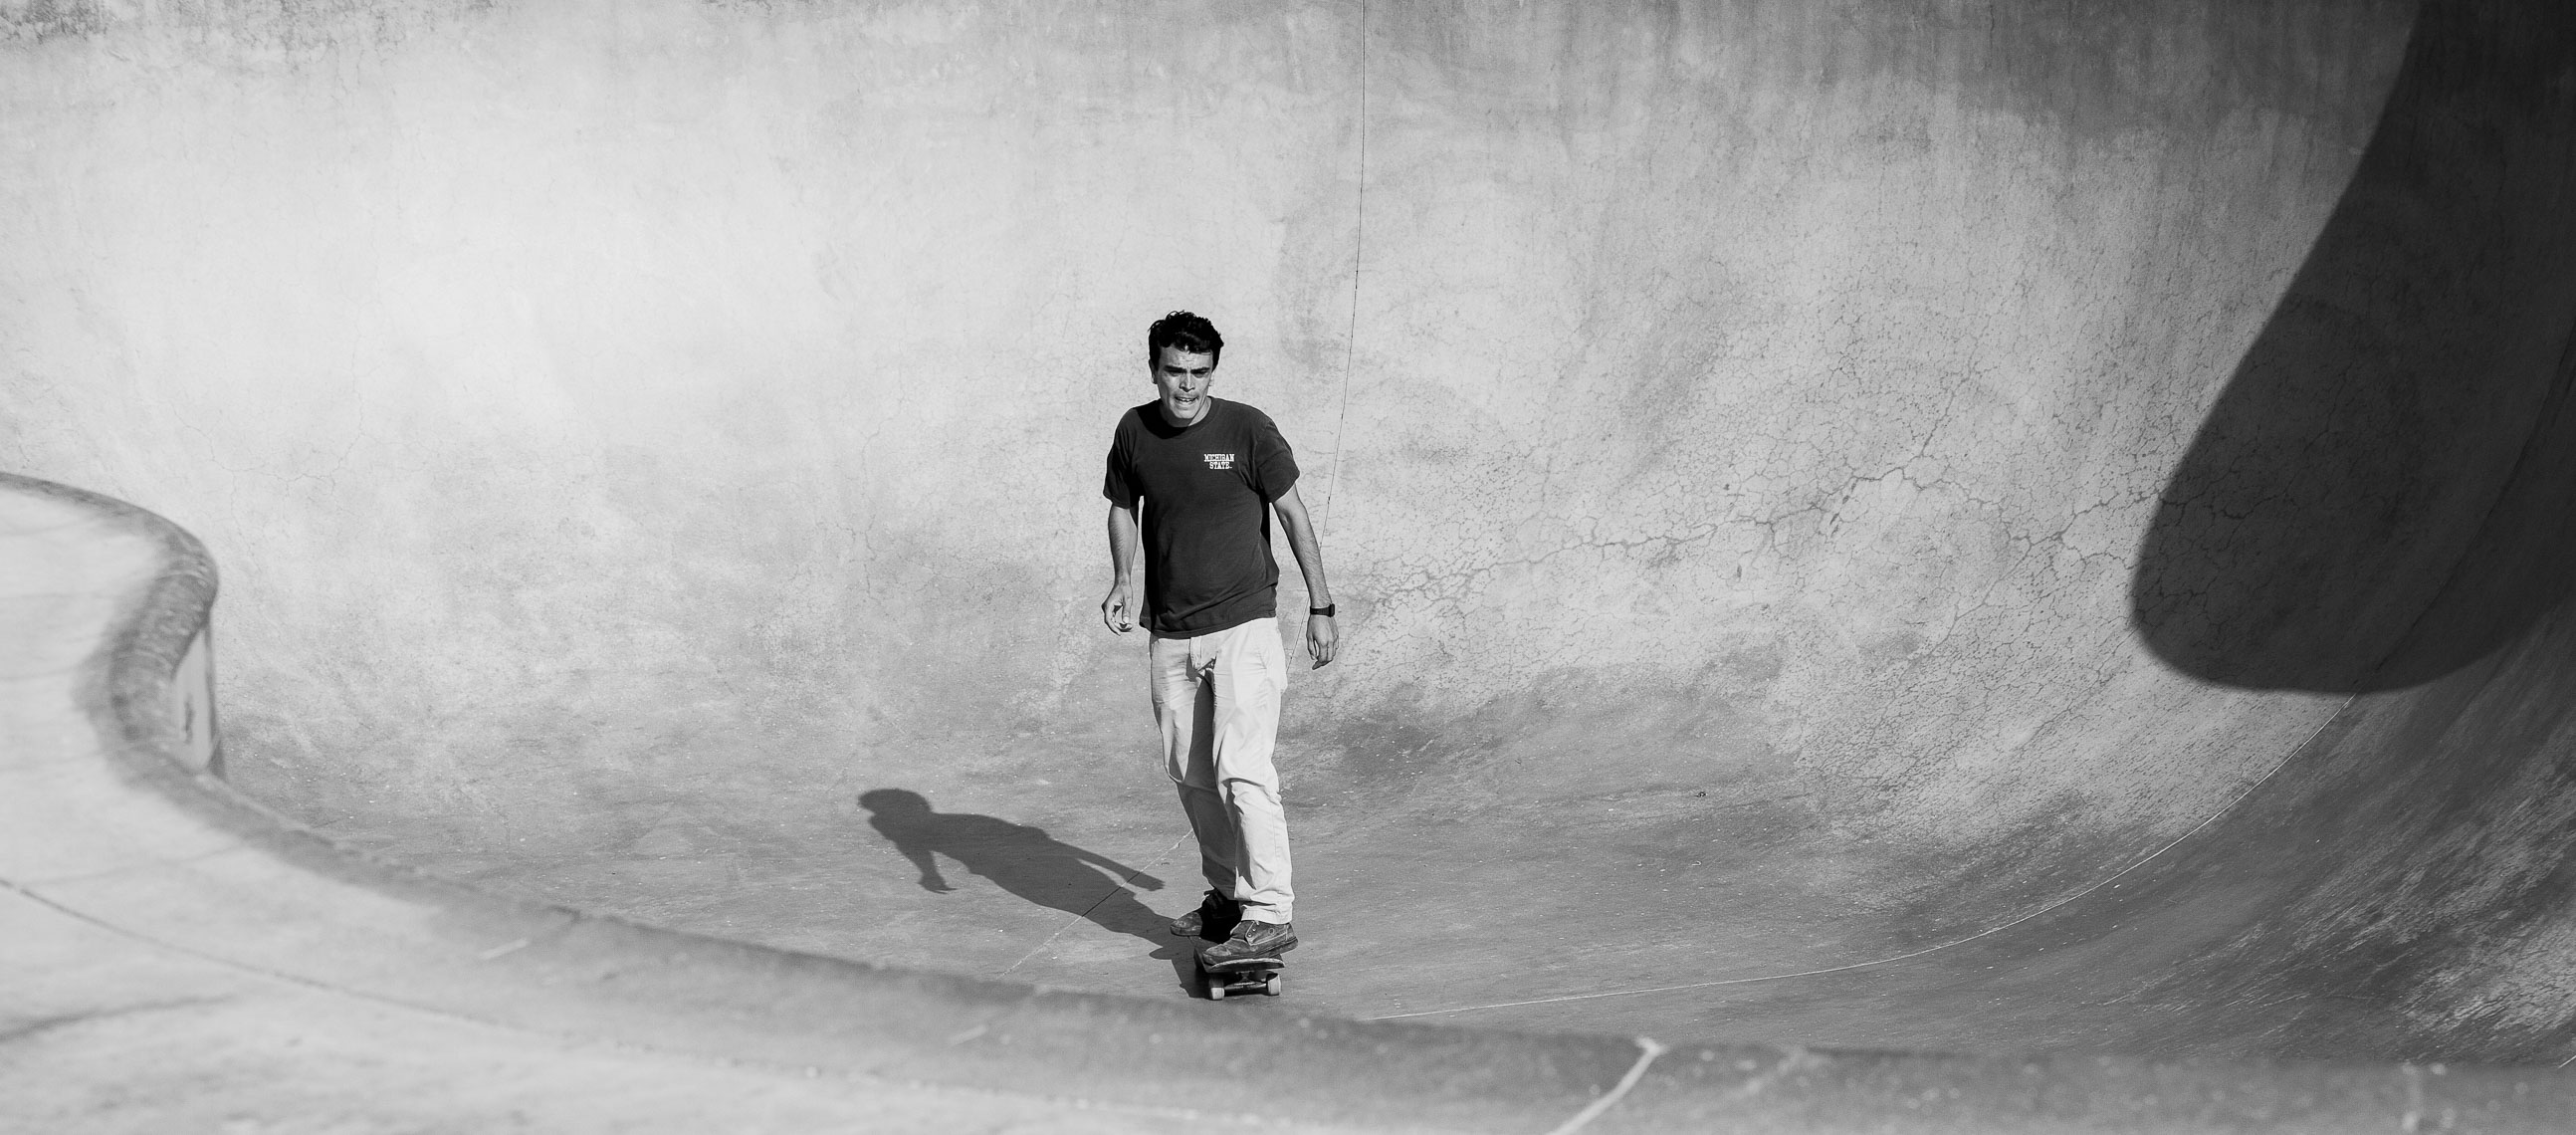 140623 Skate Park-2007